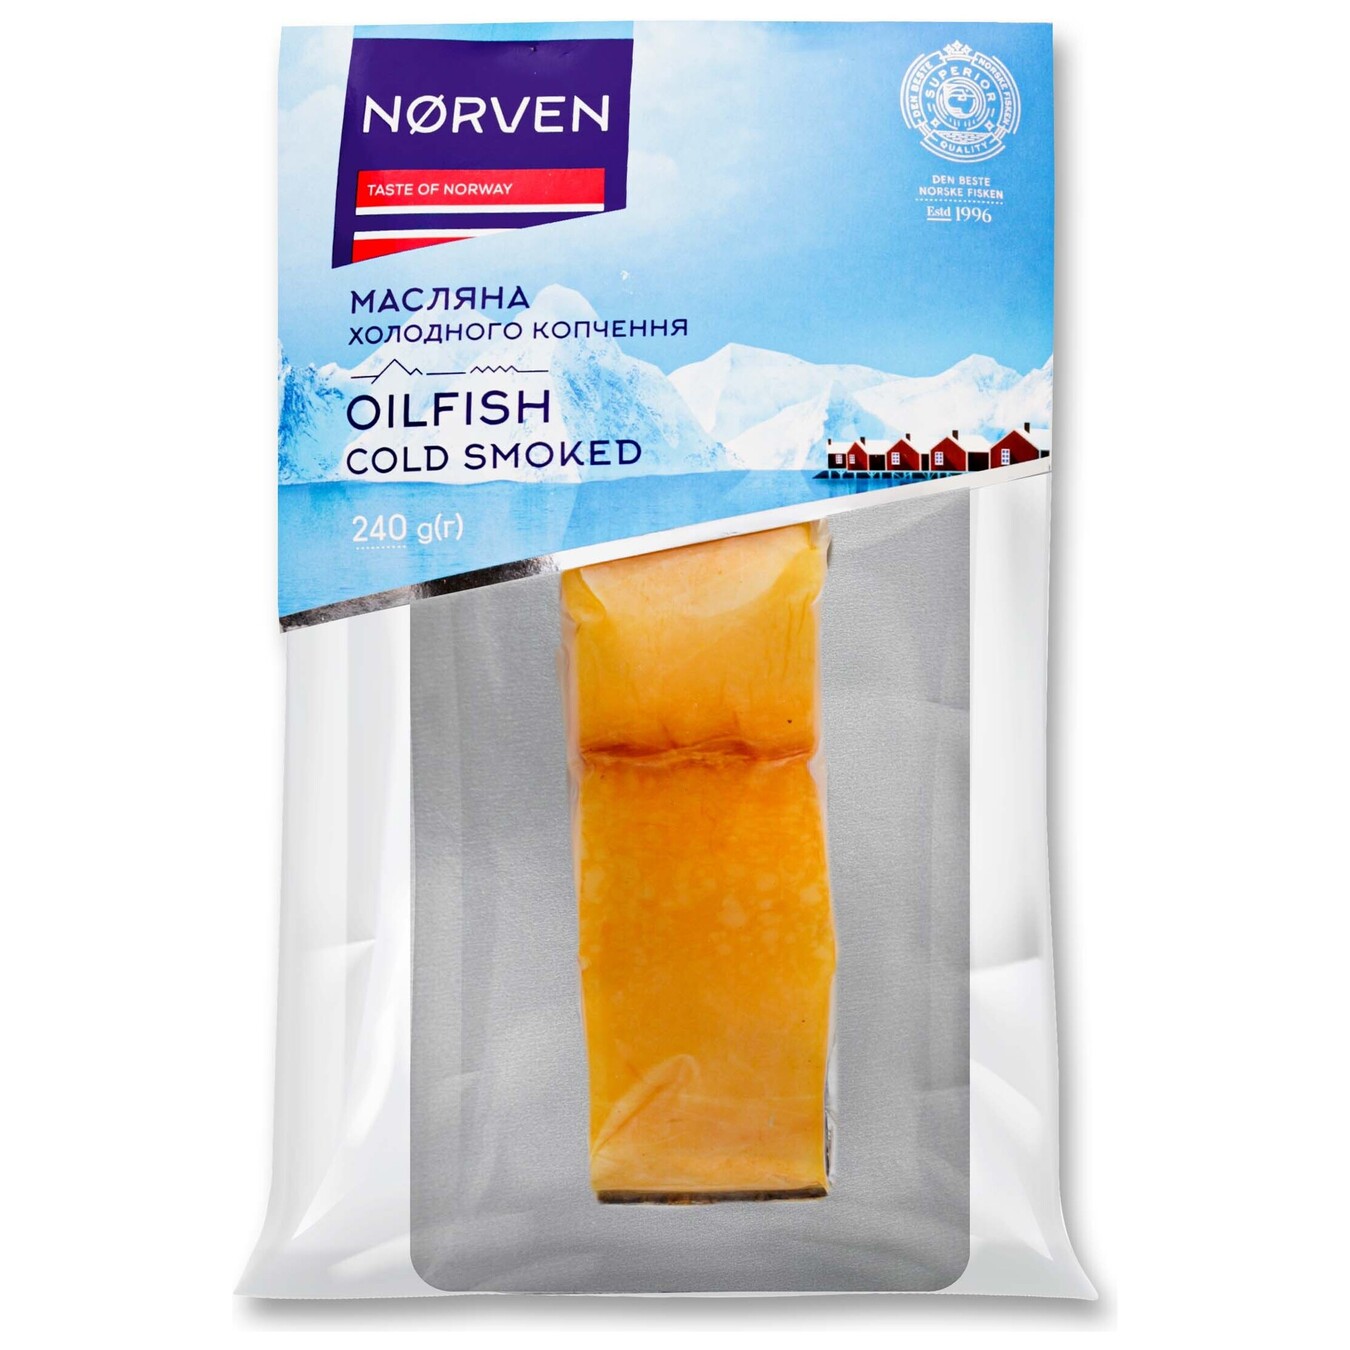 Масляна риба Norven холодного копчення філе-шматок 240г